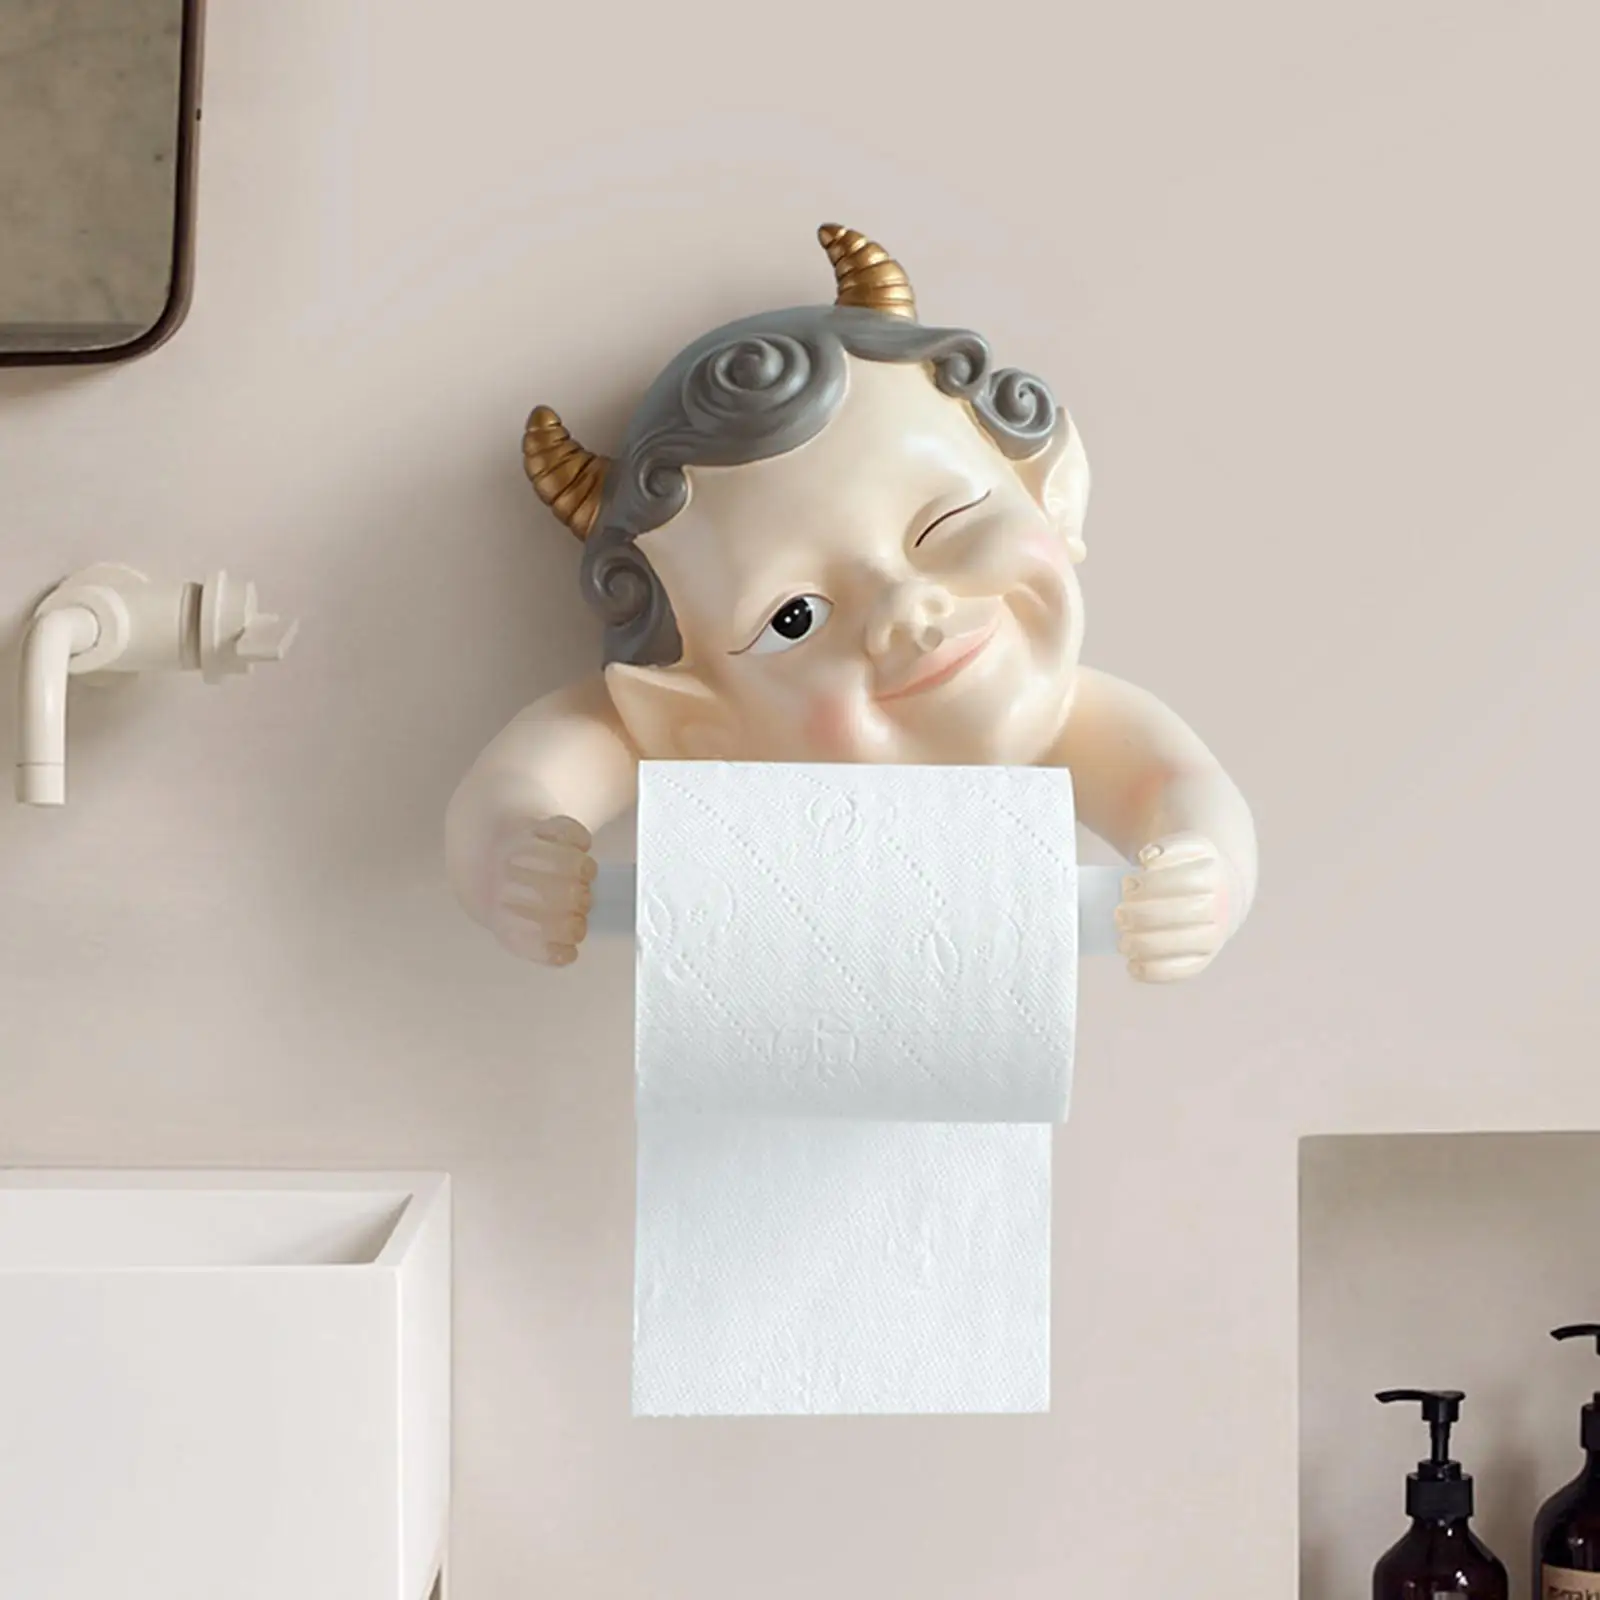 Resin Toilet Paper Holder Paper Towel Holder for Bathroom Kitchen Decoration